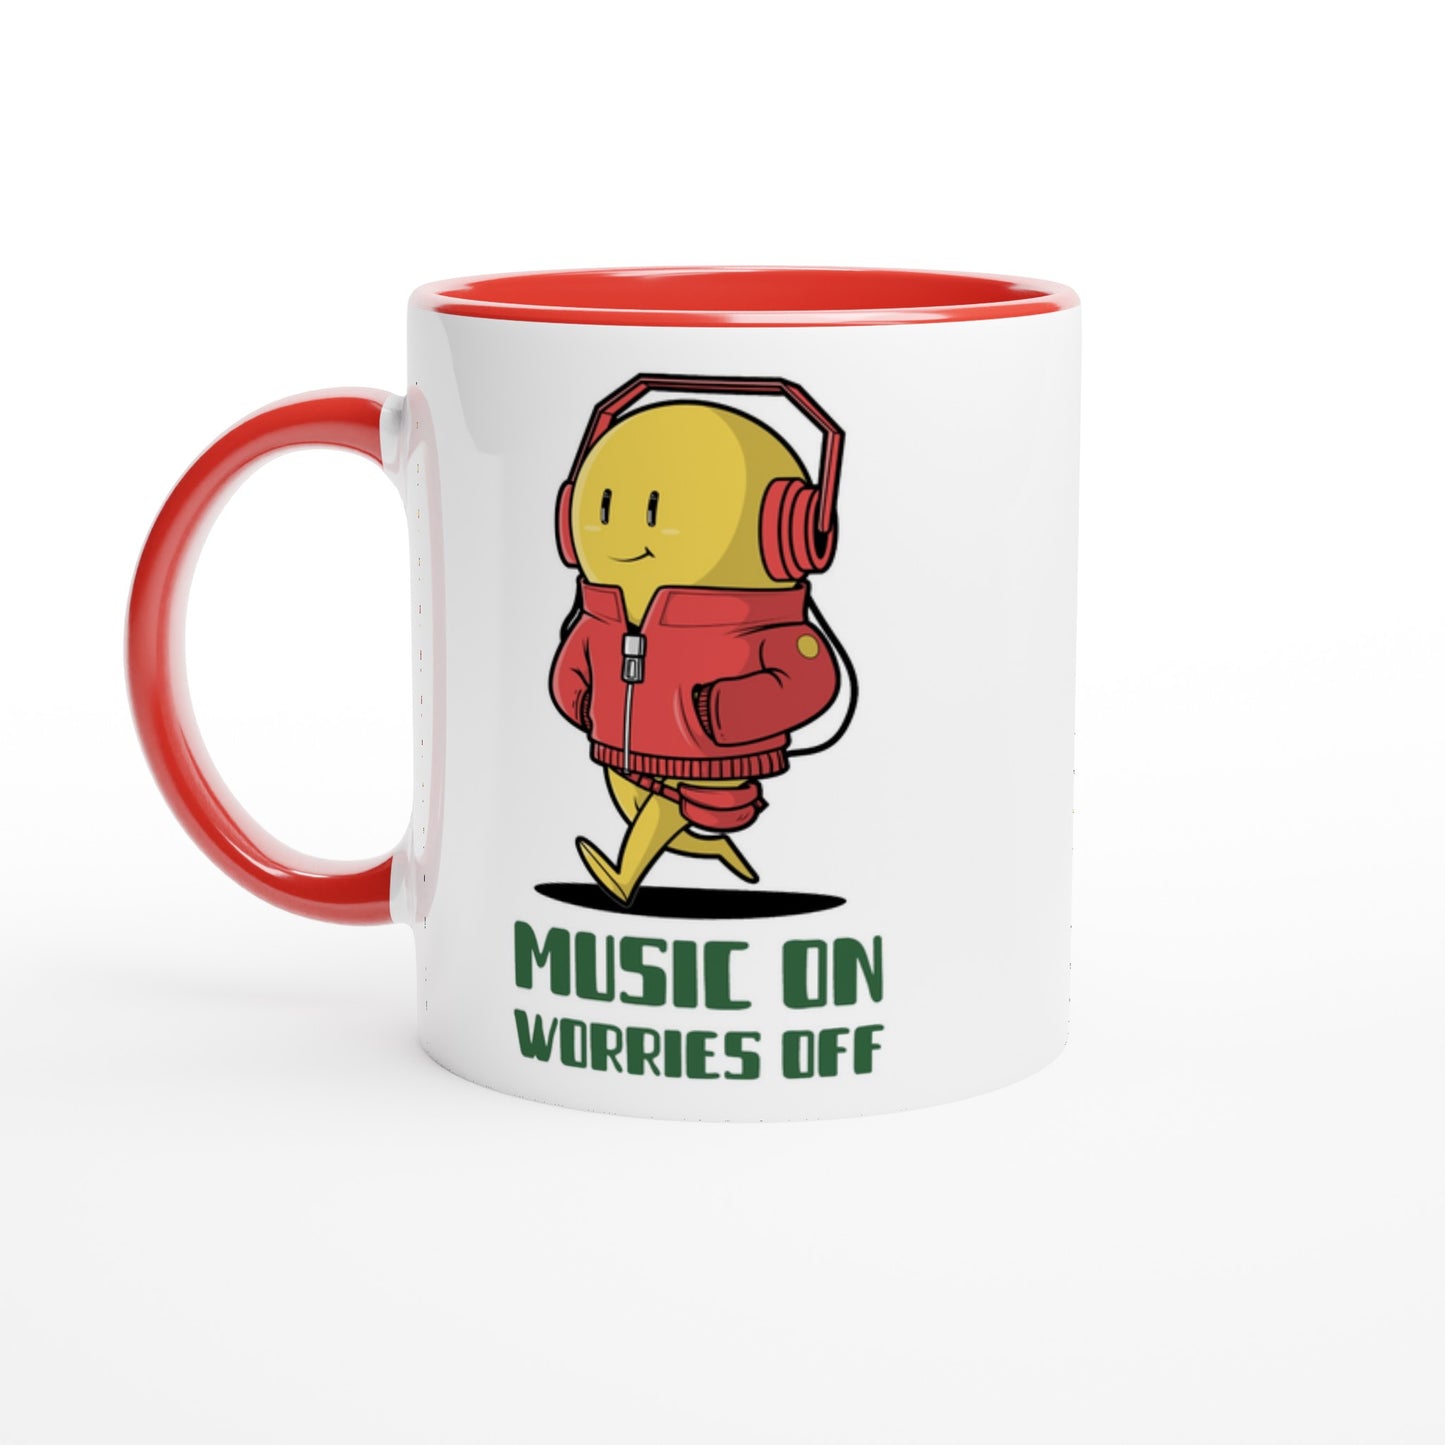 Music On, Worries Off - White 11oz Ceramic Mug with Colour Inside Ceramic Red Colour 11oz Mug Music